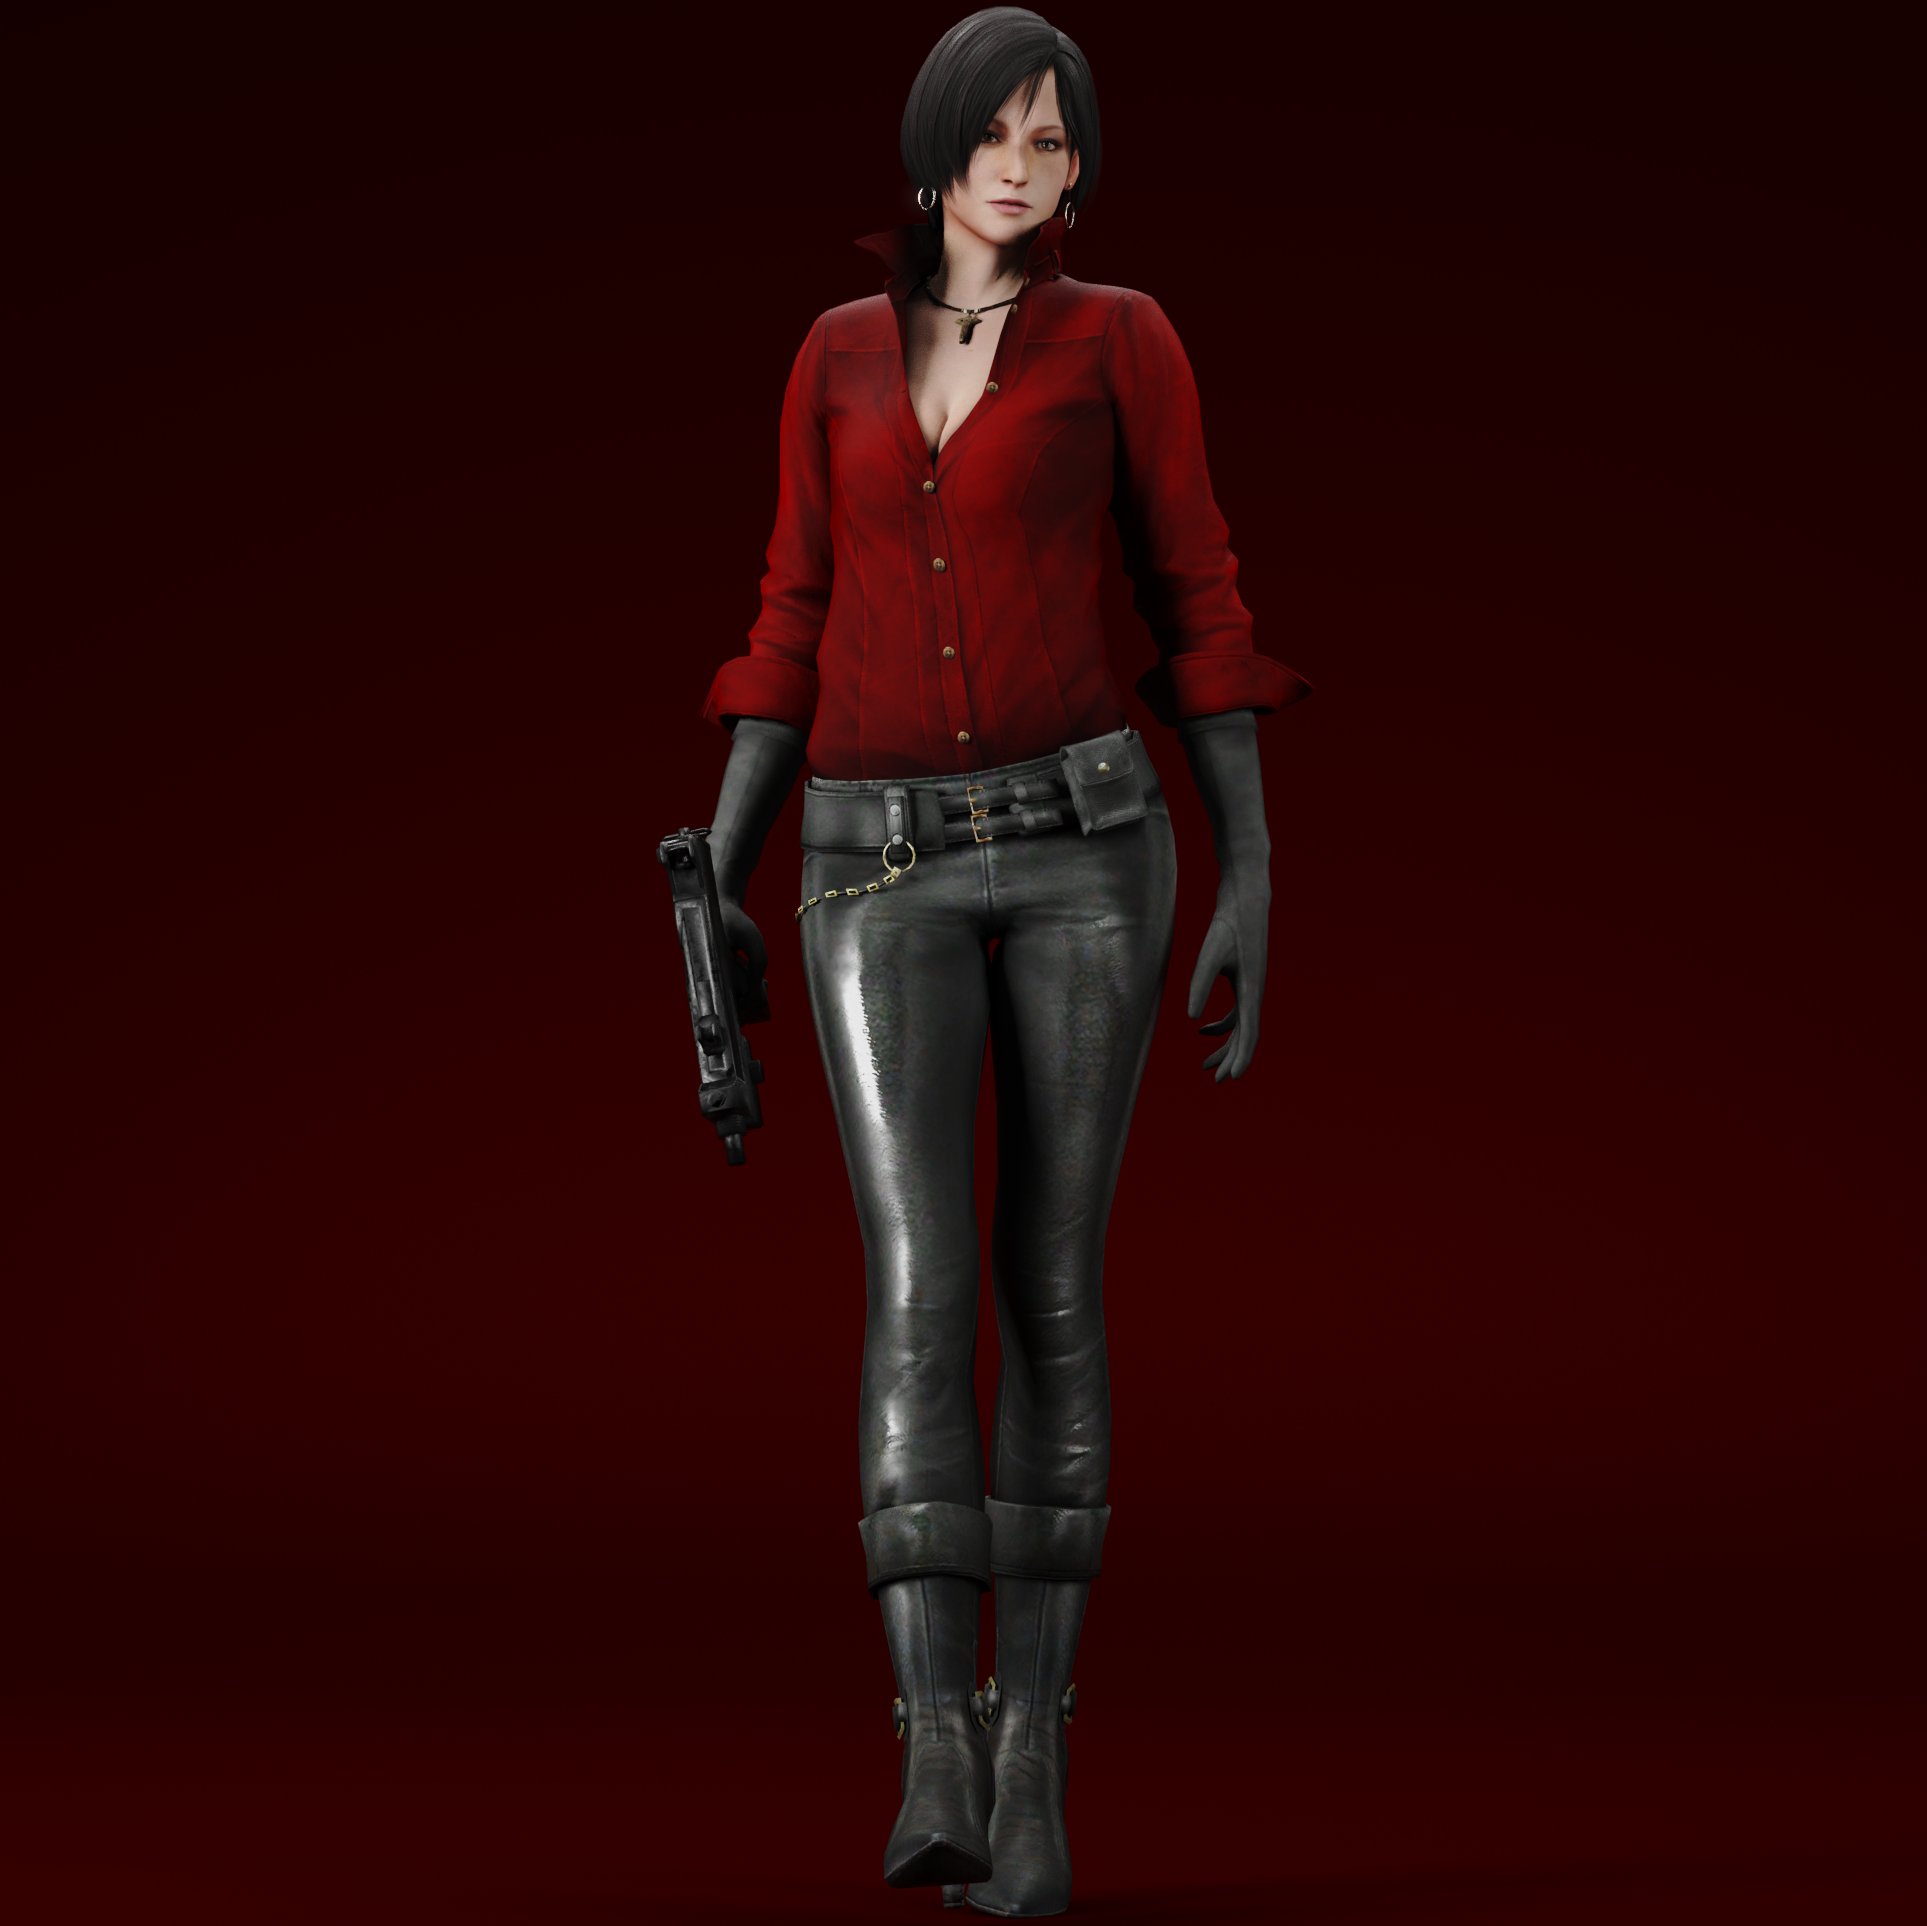 Jen 🏳️‍🌈 on X: Brand new render for Ada Wong in Resident Evil